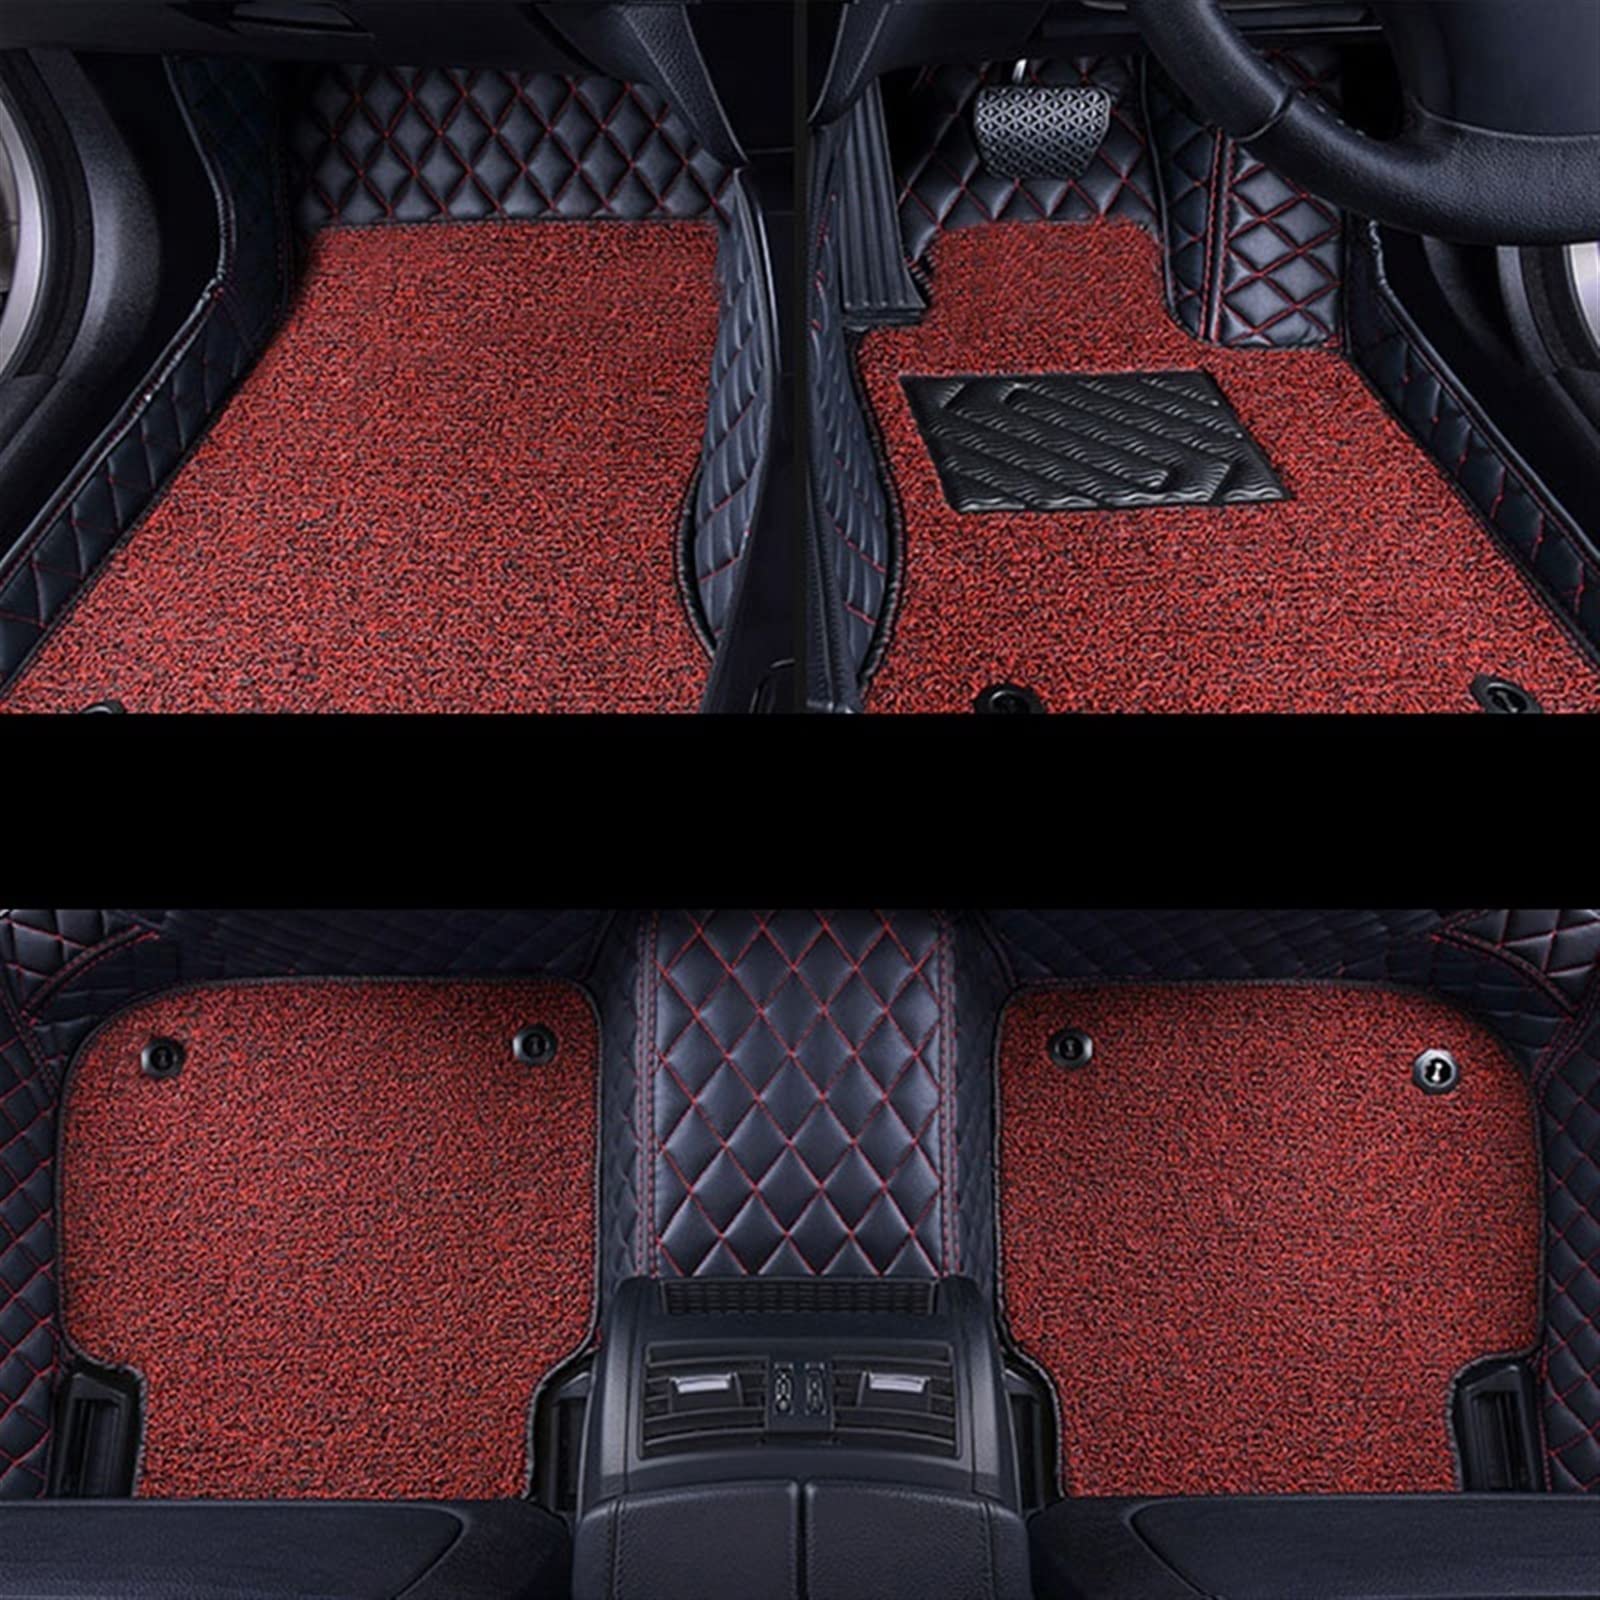 RHD-Auto-Fußmatten Für Toyota Für CHR Für C-HR 2020 2019 2018 2017 2016 Auto Double Layer Wire Loop Carpets Covers Auto Fußmatten Tepiche(3pcs-black red red) von SKINII